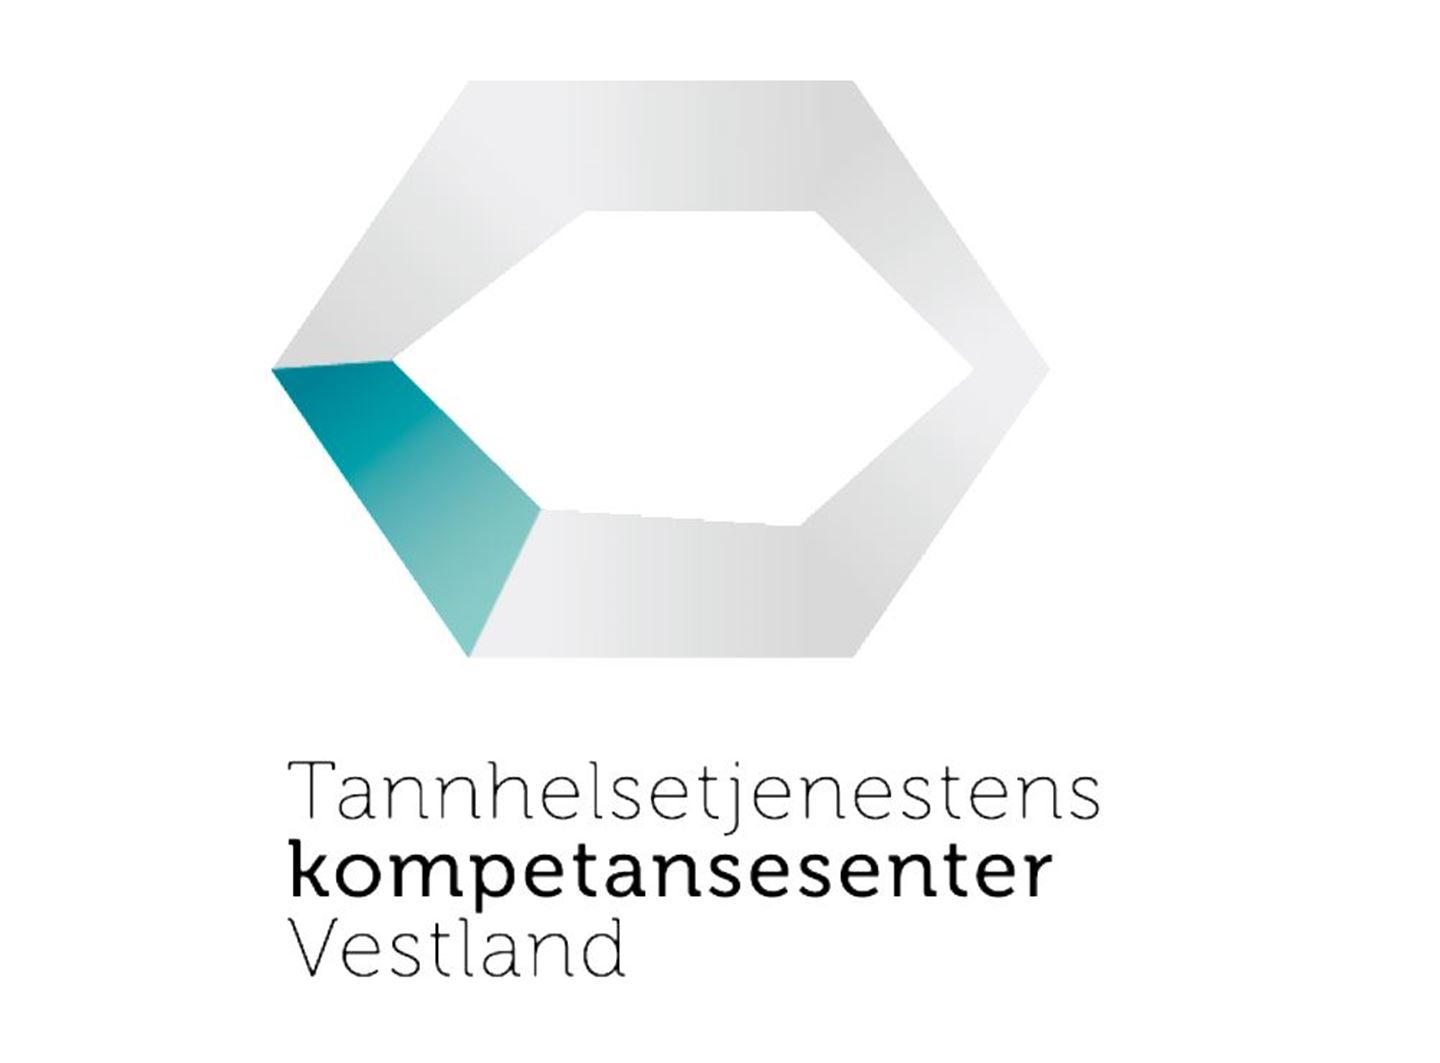 logoen til Tannhelsetenesta kompetansesenter Vestland